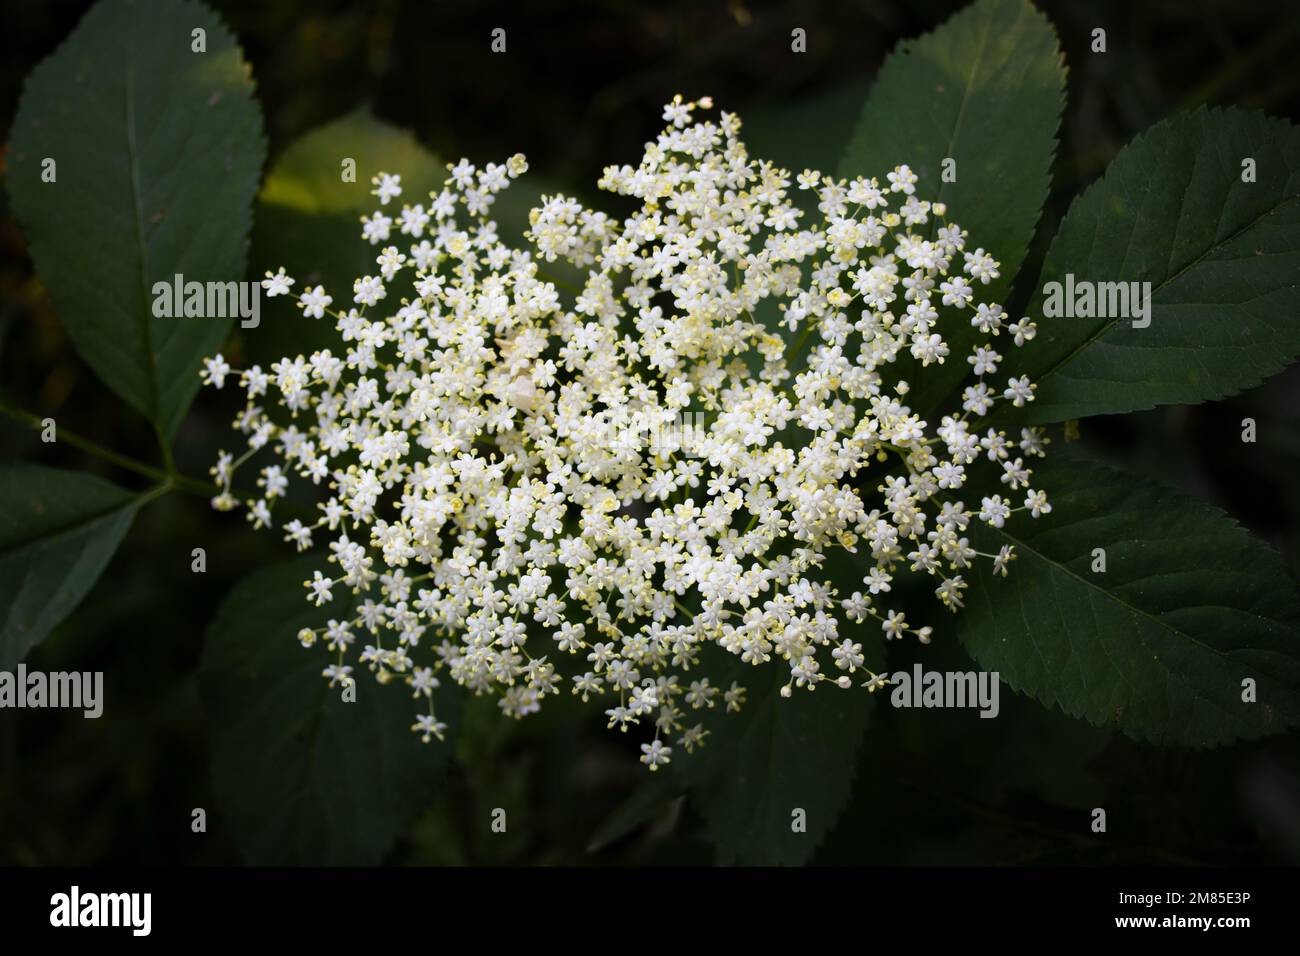 Elderberry flowers Stock Photo